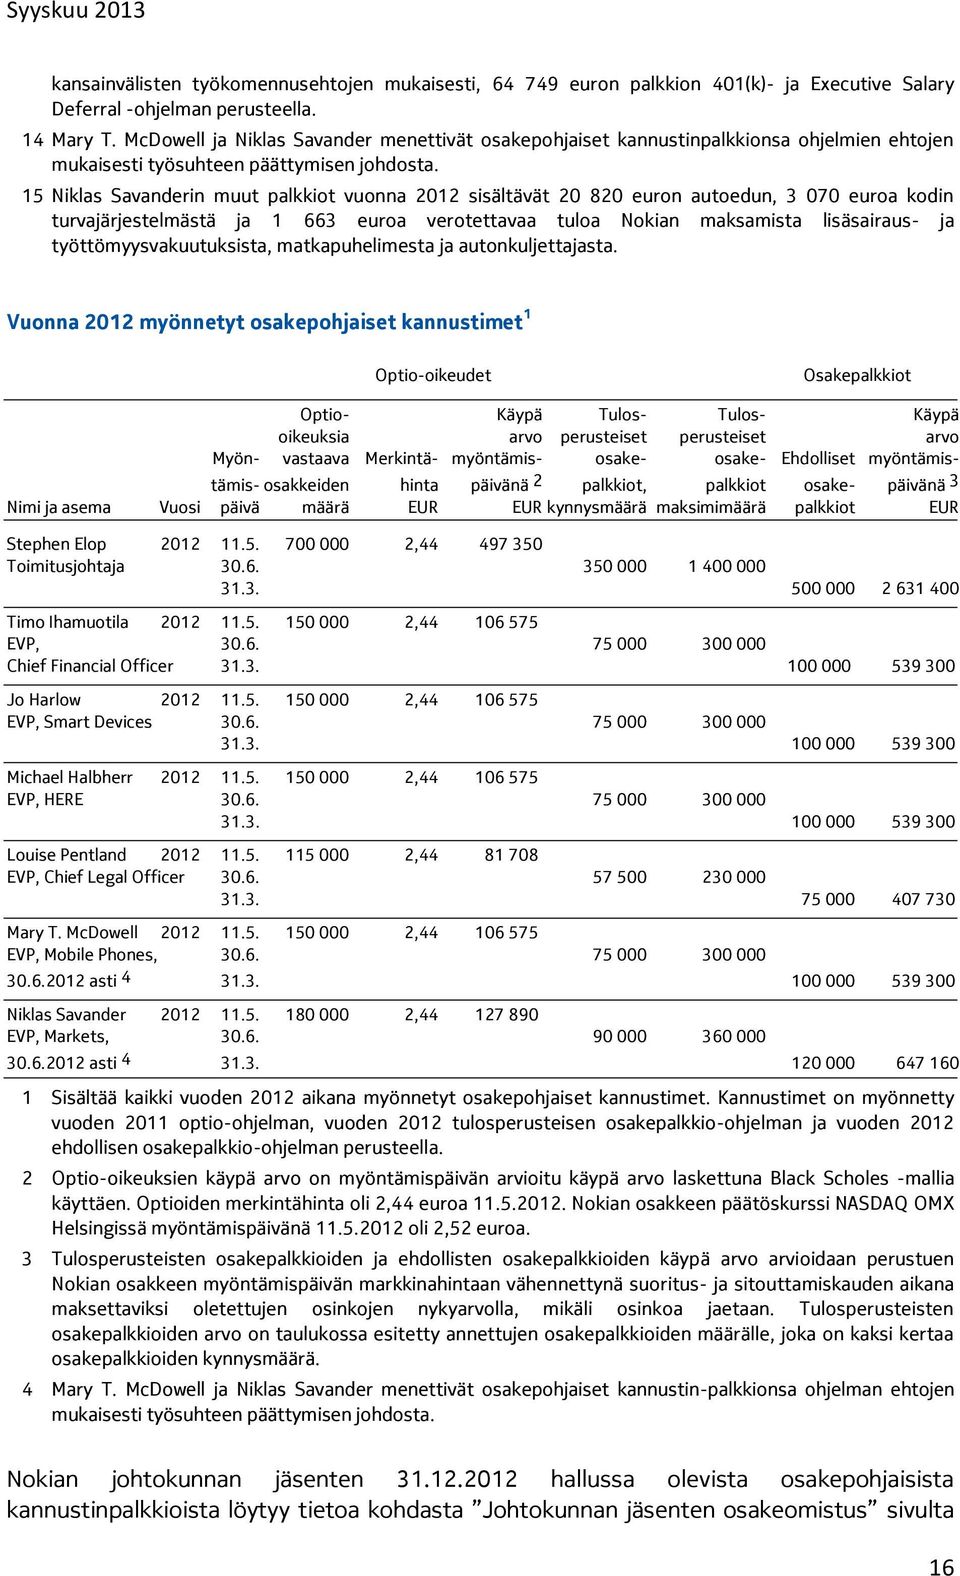 15 Niklas Savanderin muut palkkiot vuonna 2012 sisältävät 20 820 euron autoedun, 3 070 euroa kodin turvajärjestelmästä ja 1 663 euroa verotettavaa tuloa Nokian maksamista lisäsairaus- ja